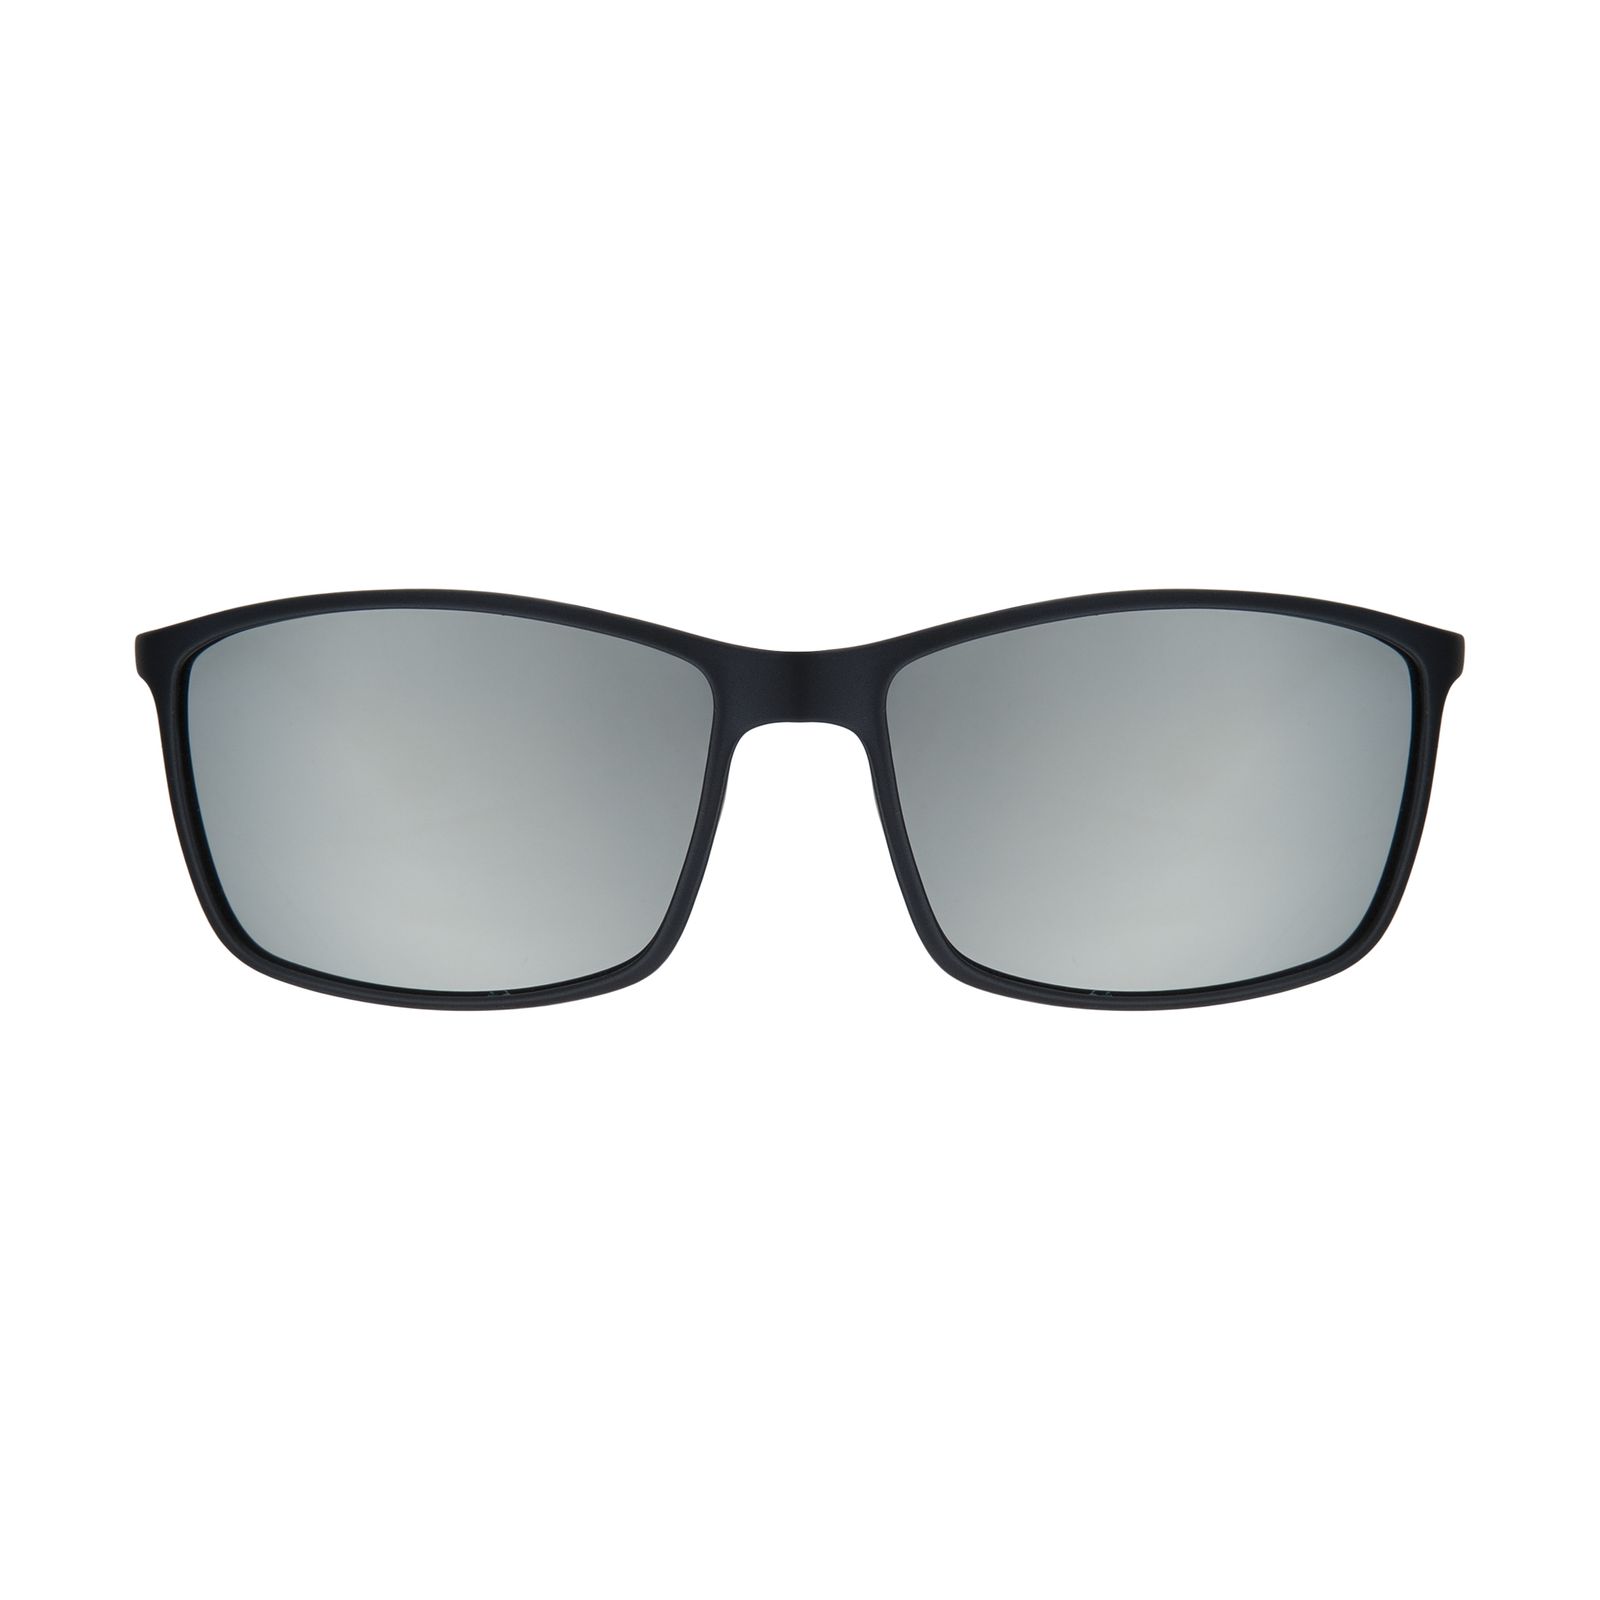 عینک آفتابی مردانه کلارک بای تروی کولیزوم مدل k4051-c2 -  - 1